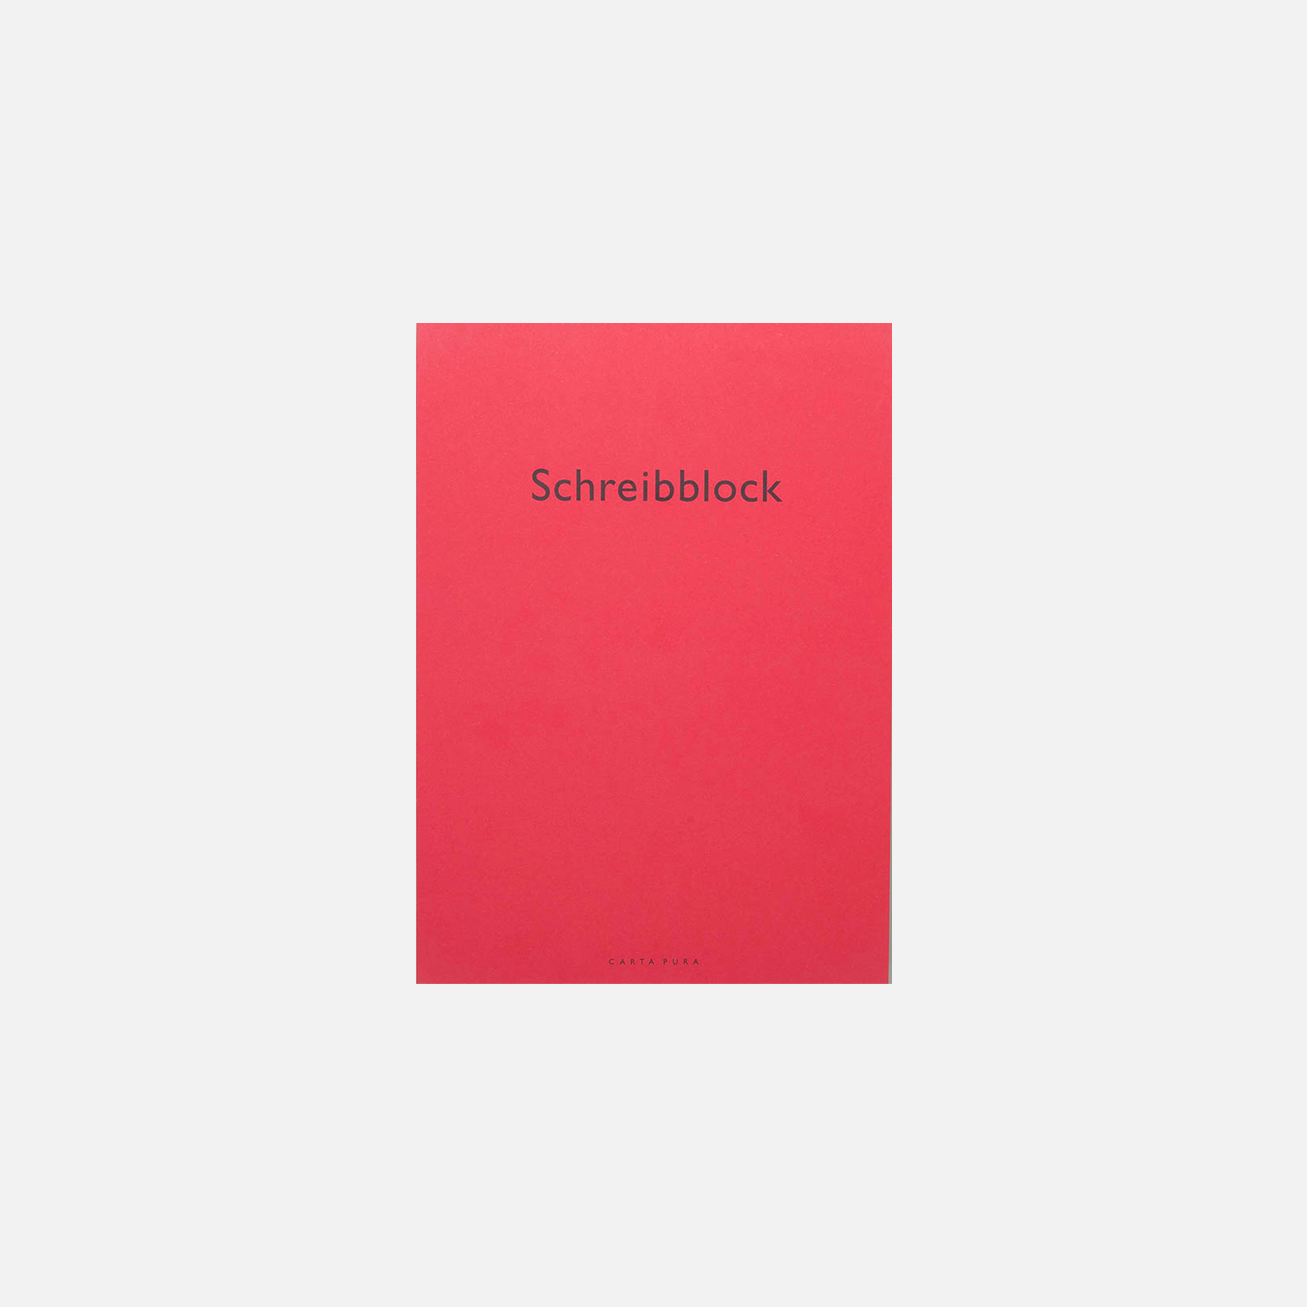 Schreibblock | Red